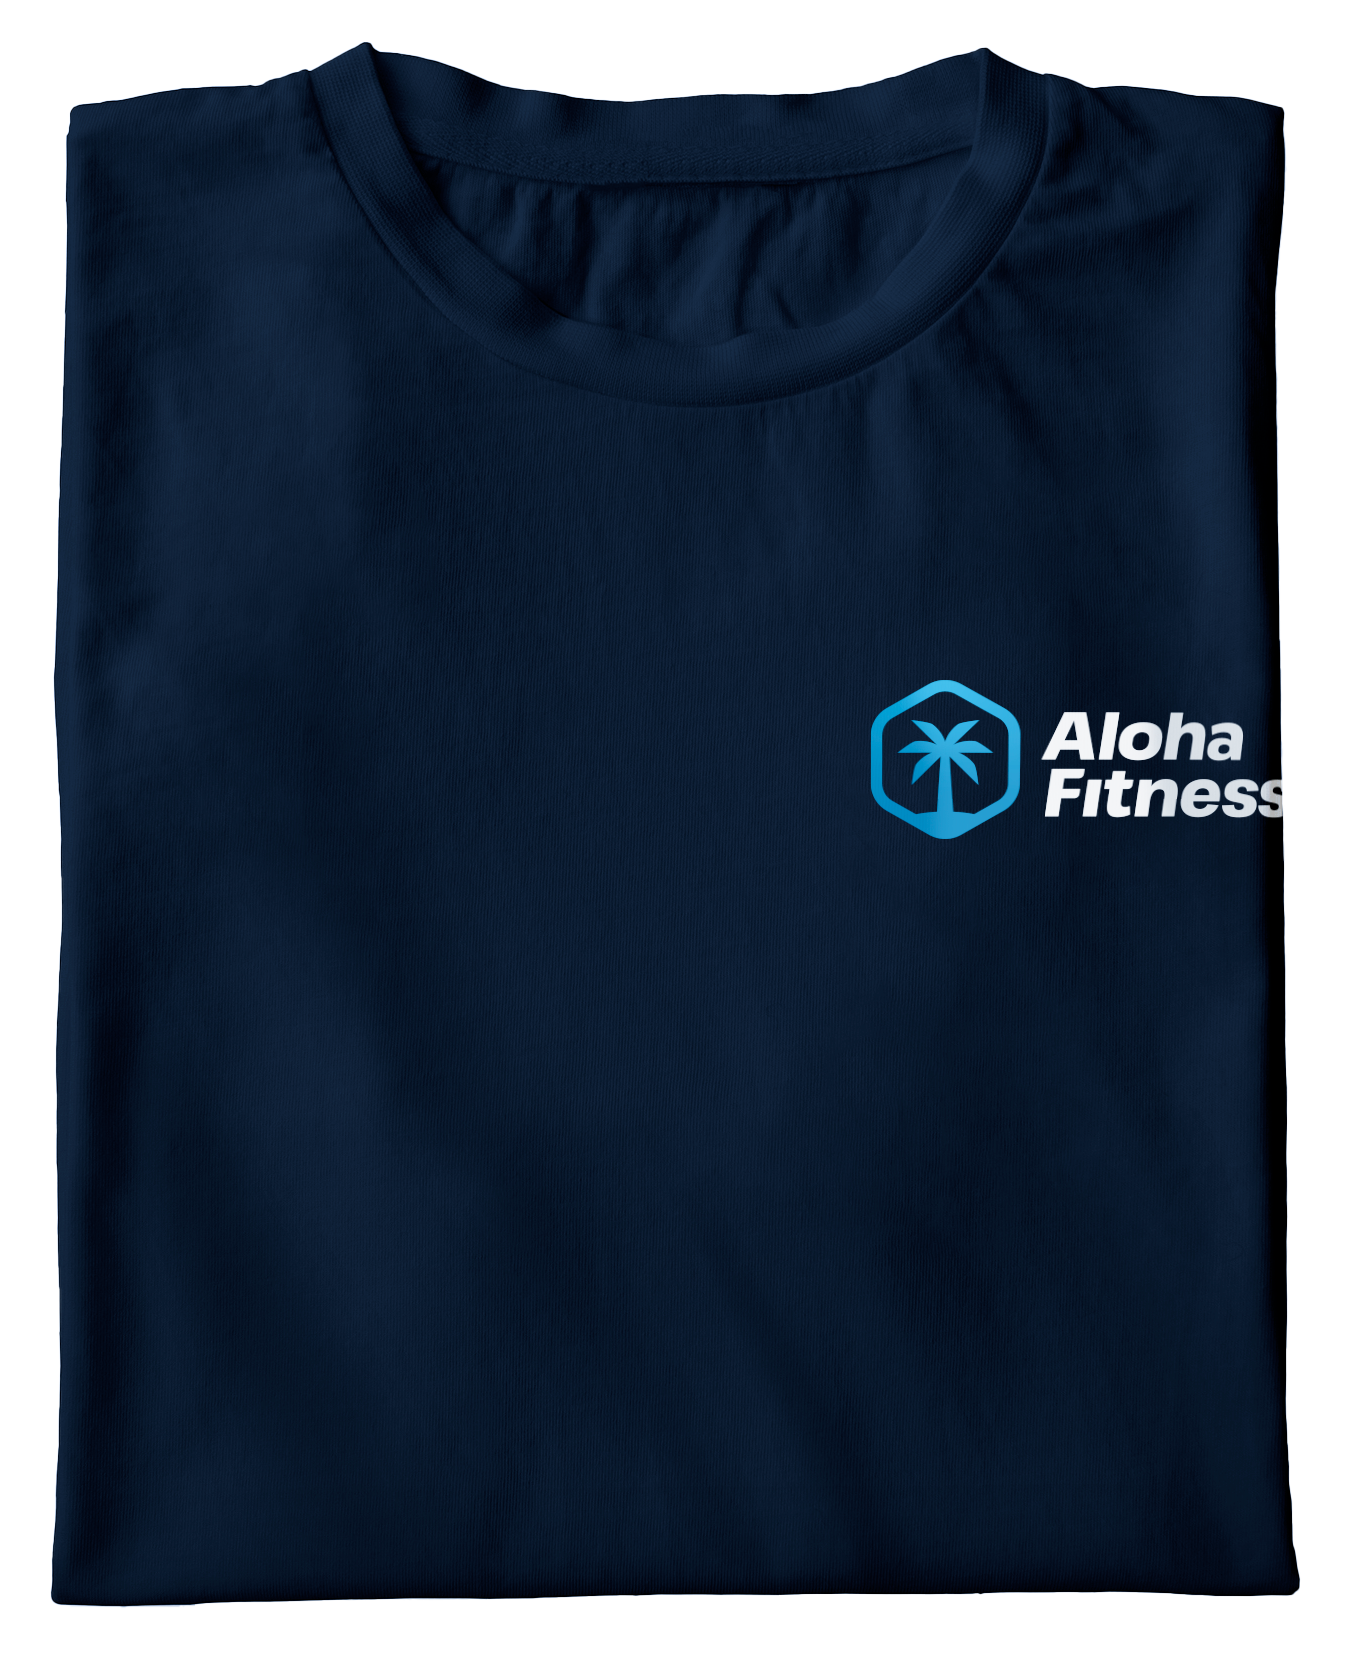 t-shirt bedrukking ontwerpen voor een klant. Logo op bedrijfskleding. Sport kleding voor Aloha Fitness